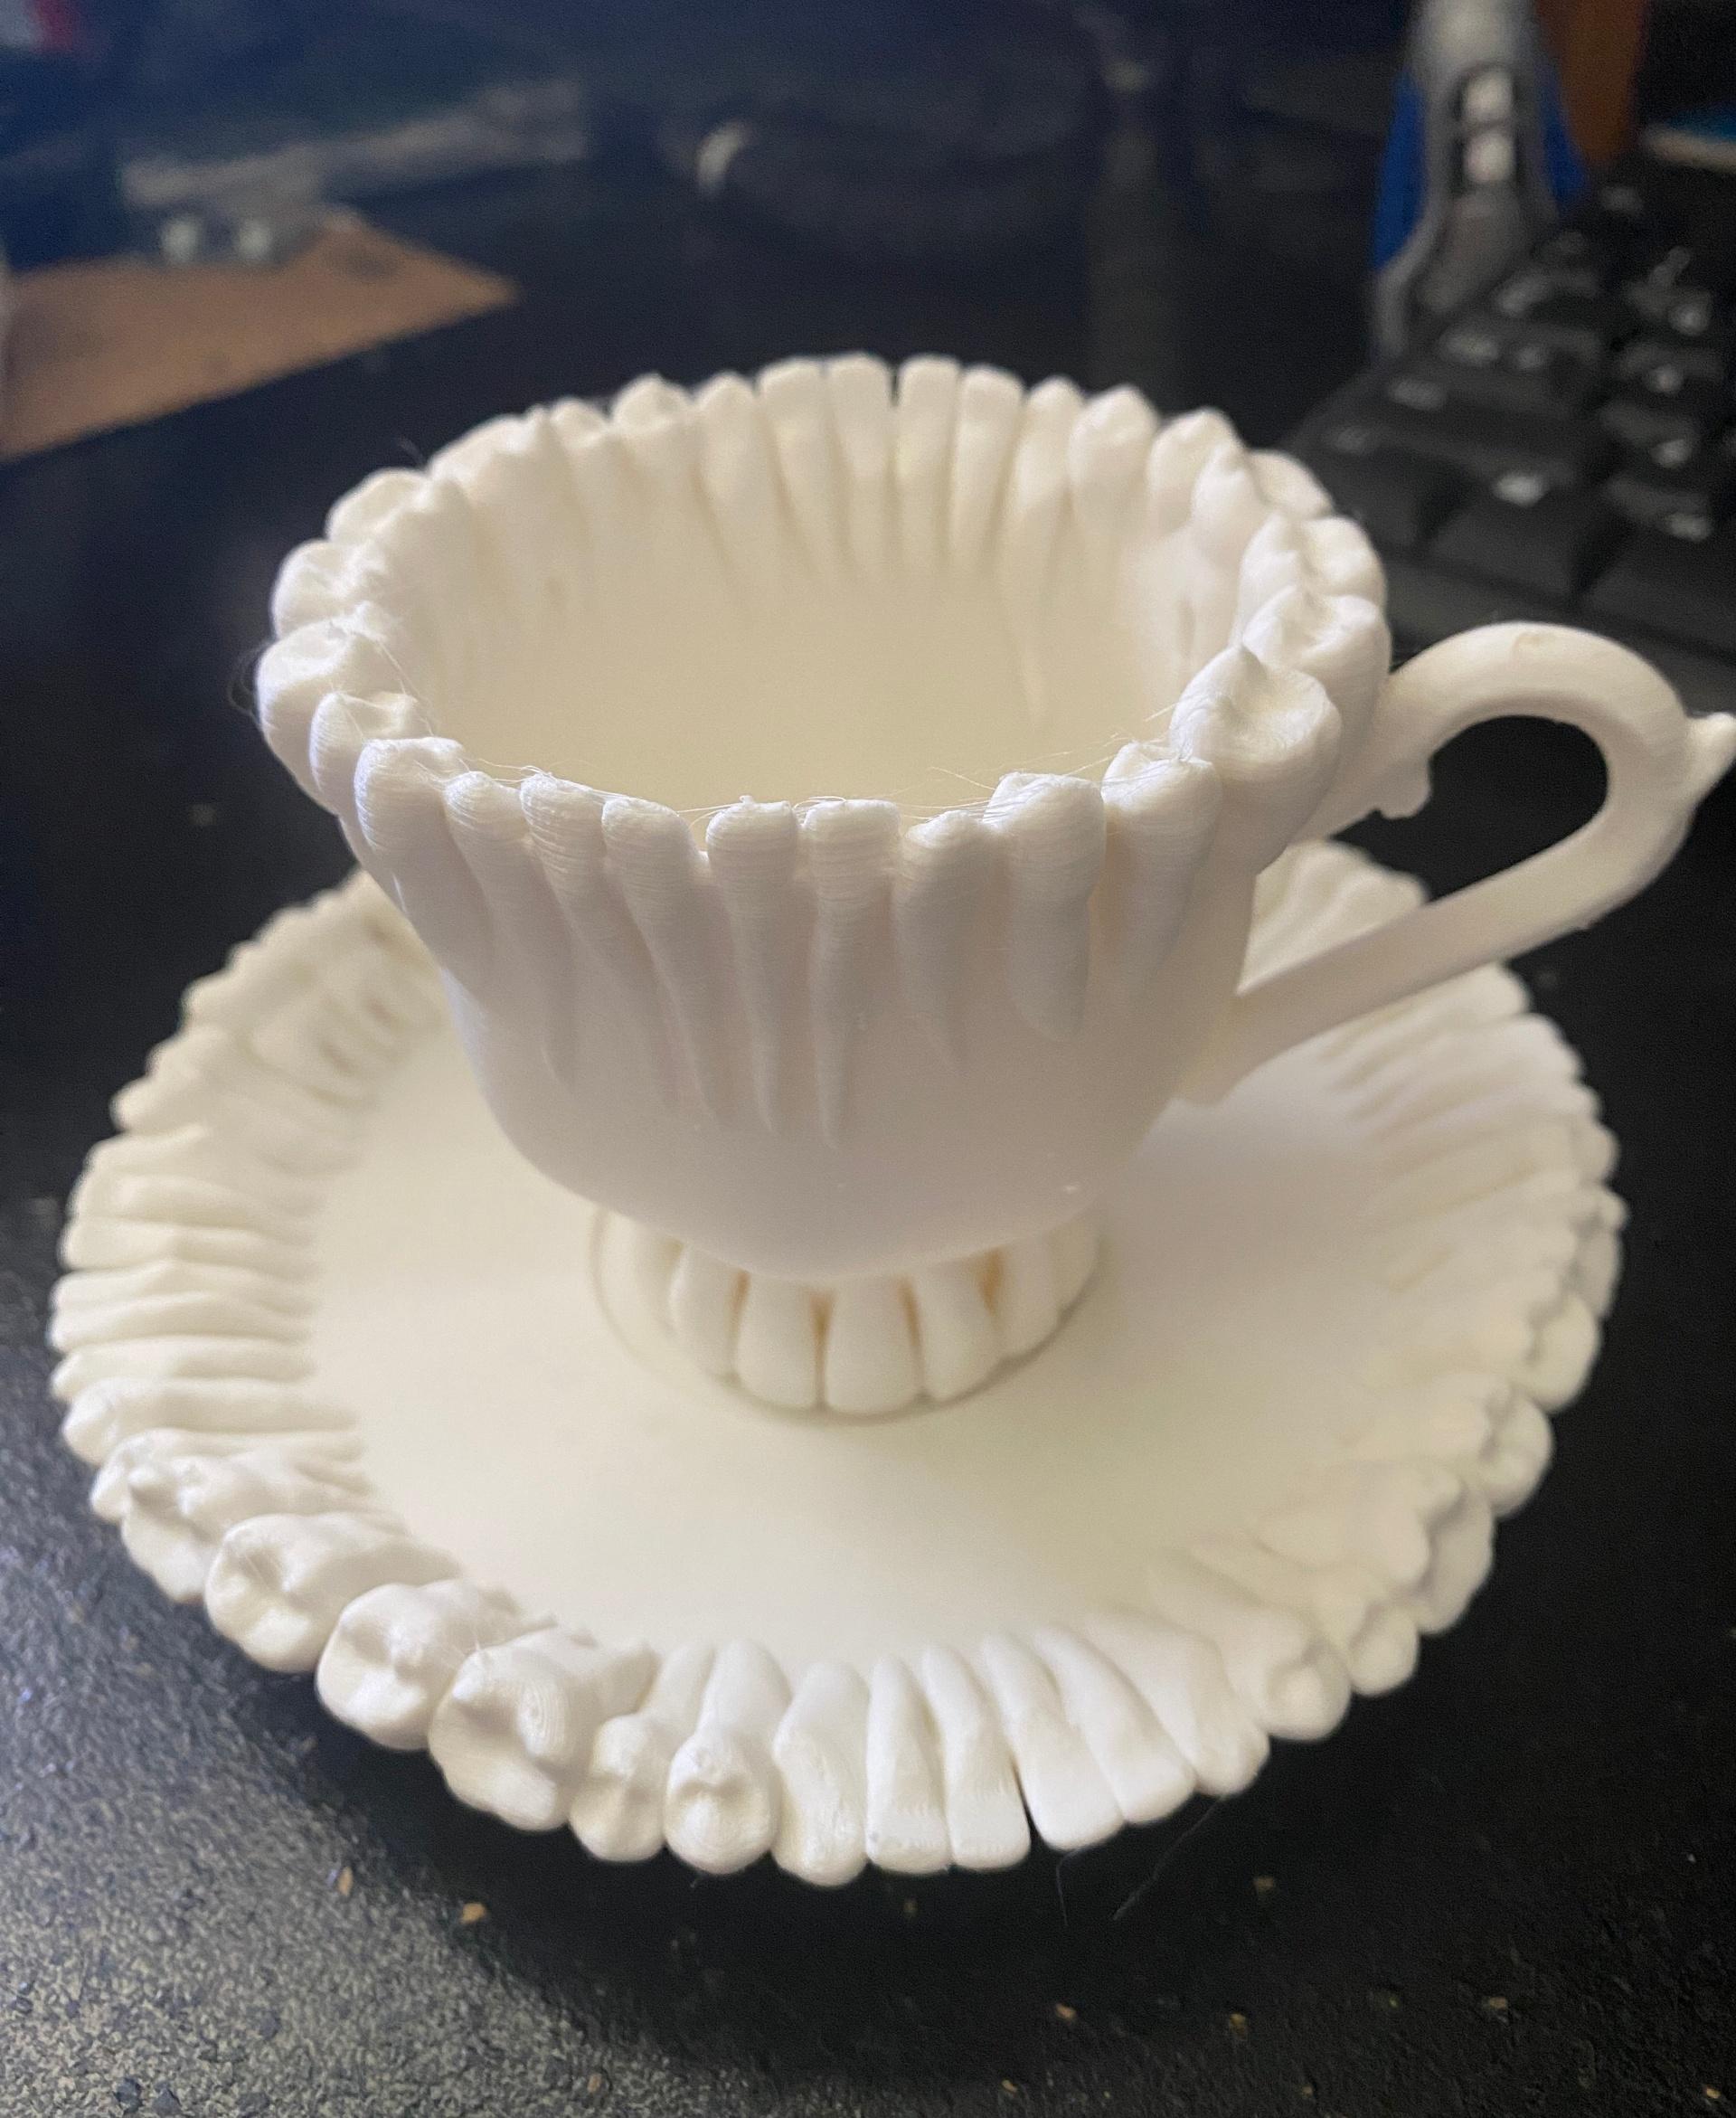 Teeth Cup 3d model